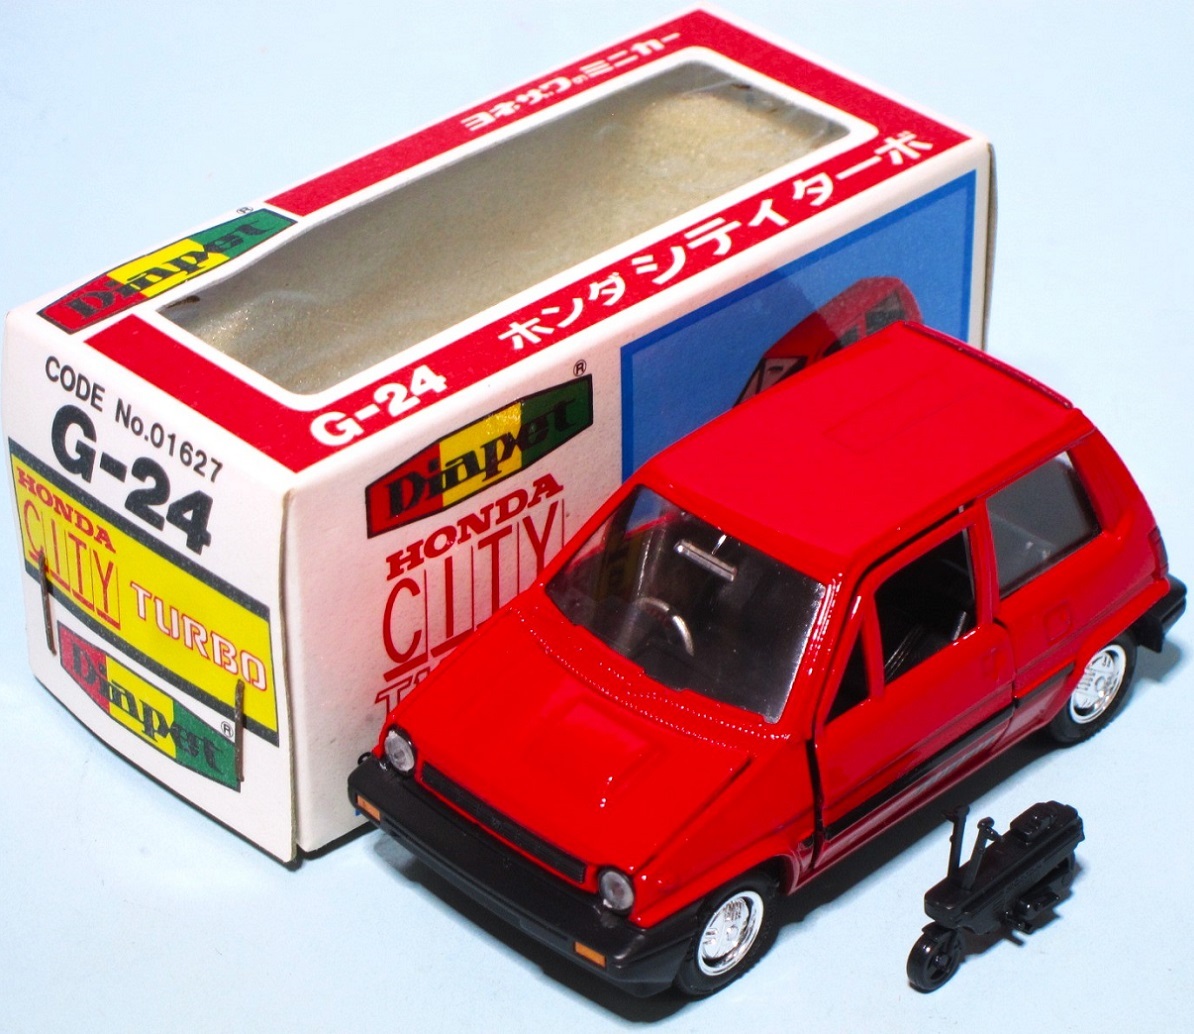 米沢 1983 ダイヤペット G-24 ホンダ 初代 シティ ターボ 赤 レッド 小さなモトコンポ付属 箱付き 美品 HONDA CITY TURBO Iの画像1